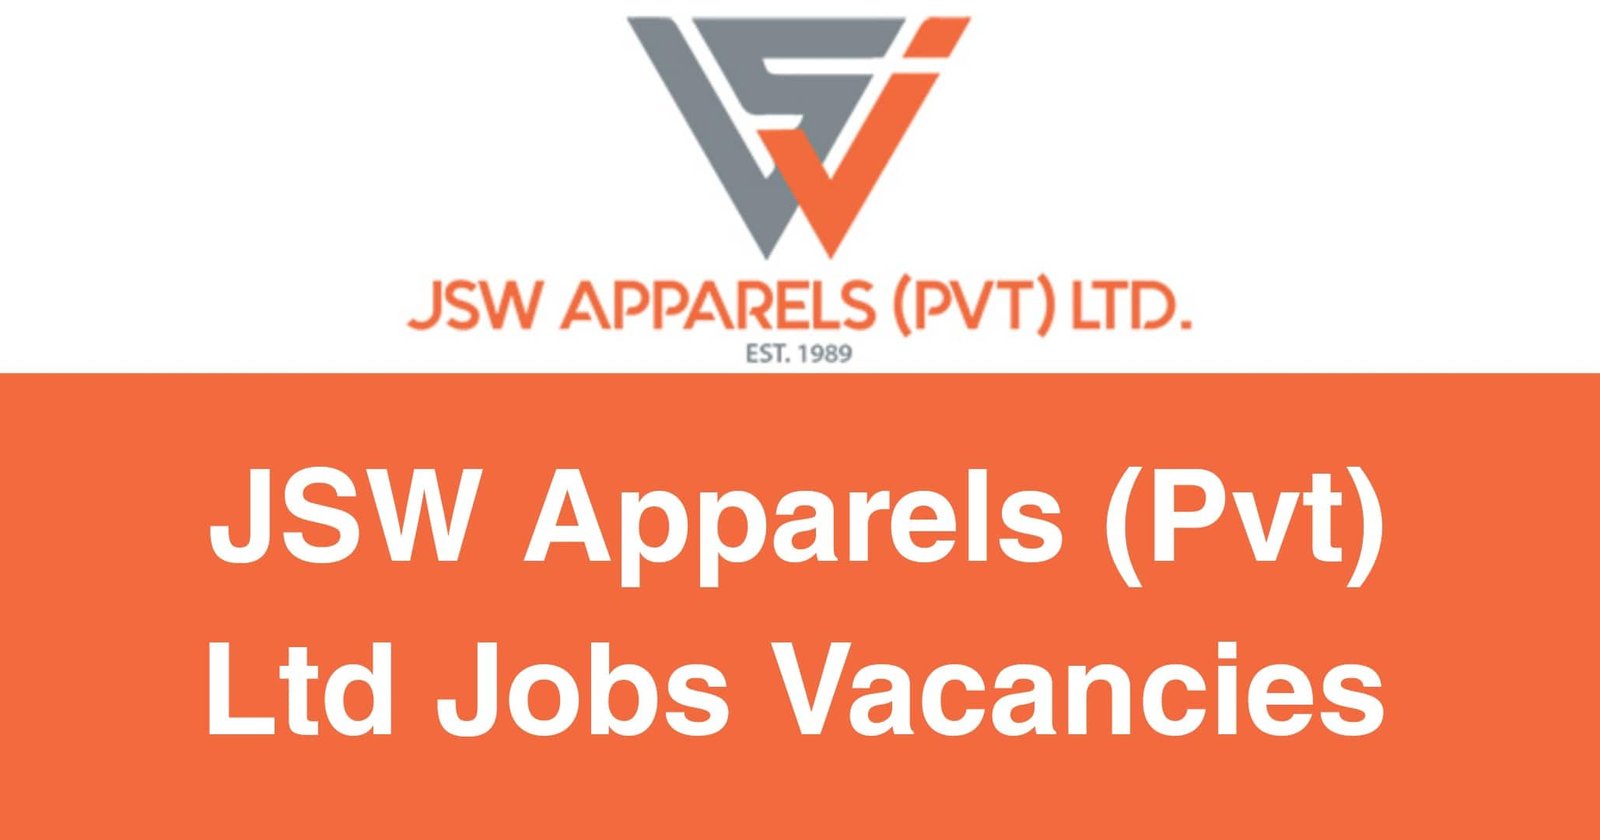 JSW Apparels (Pvt) Ltd Jobs Vacancies